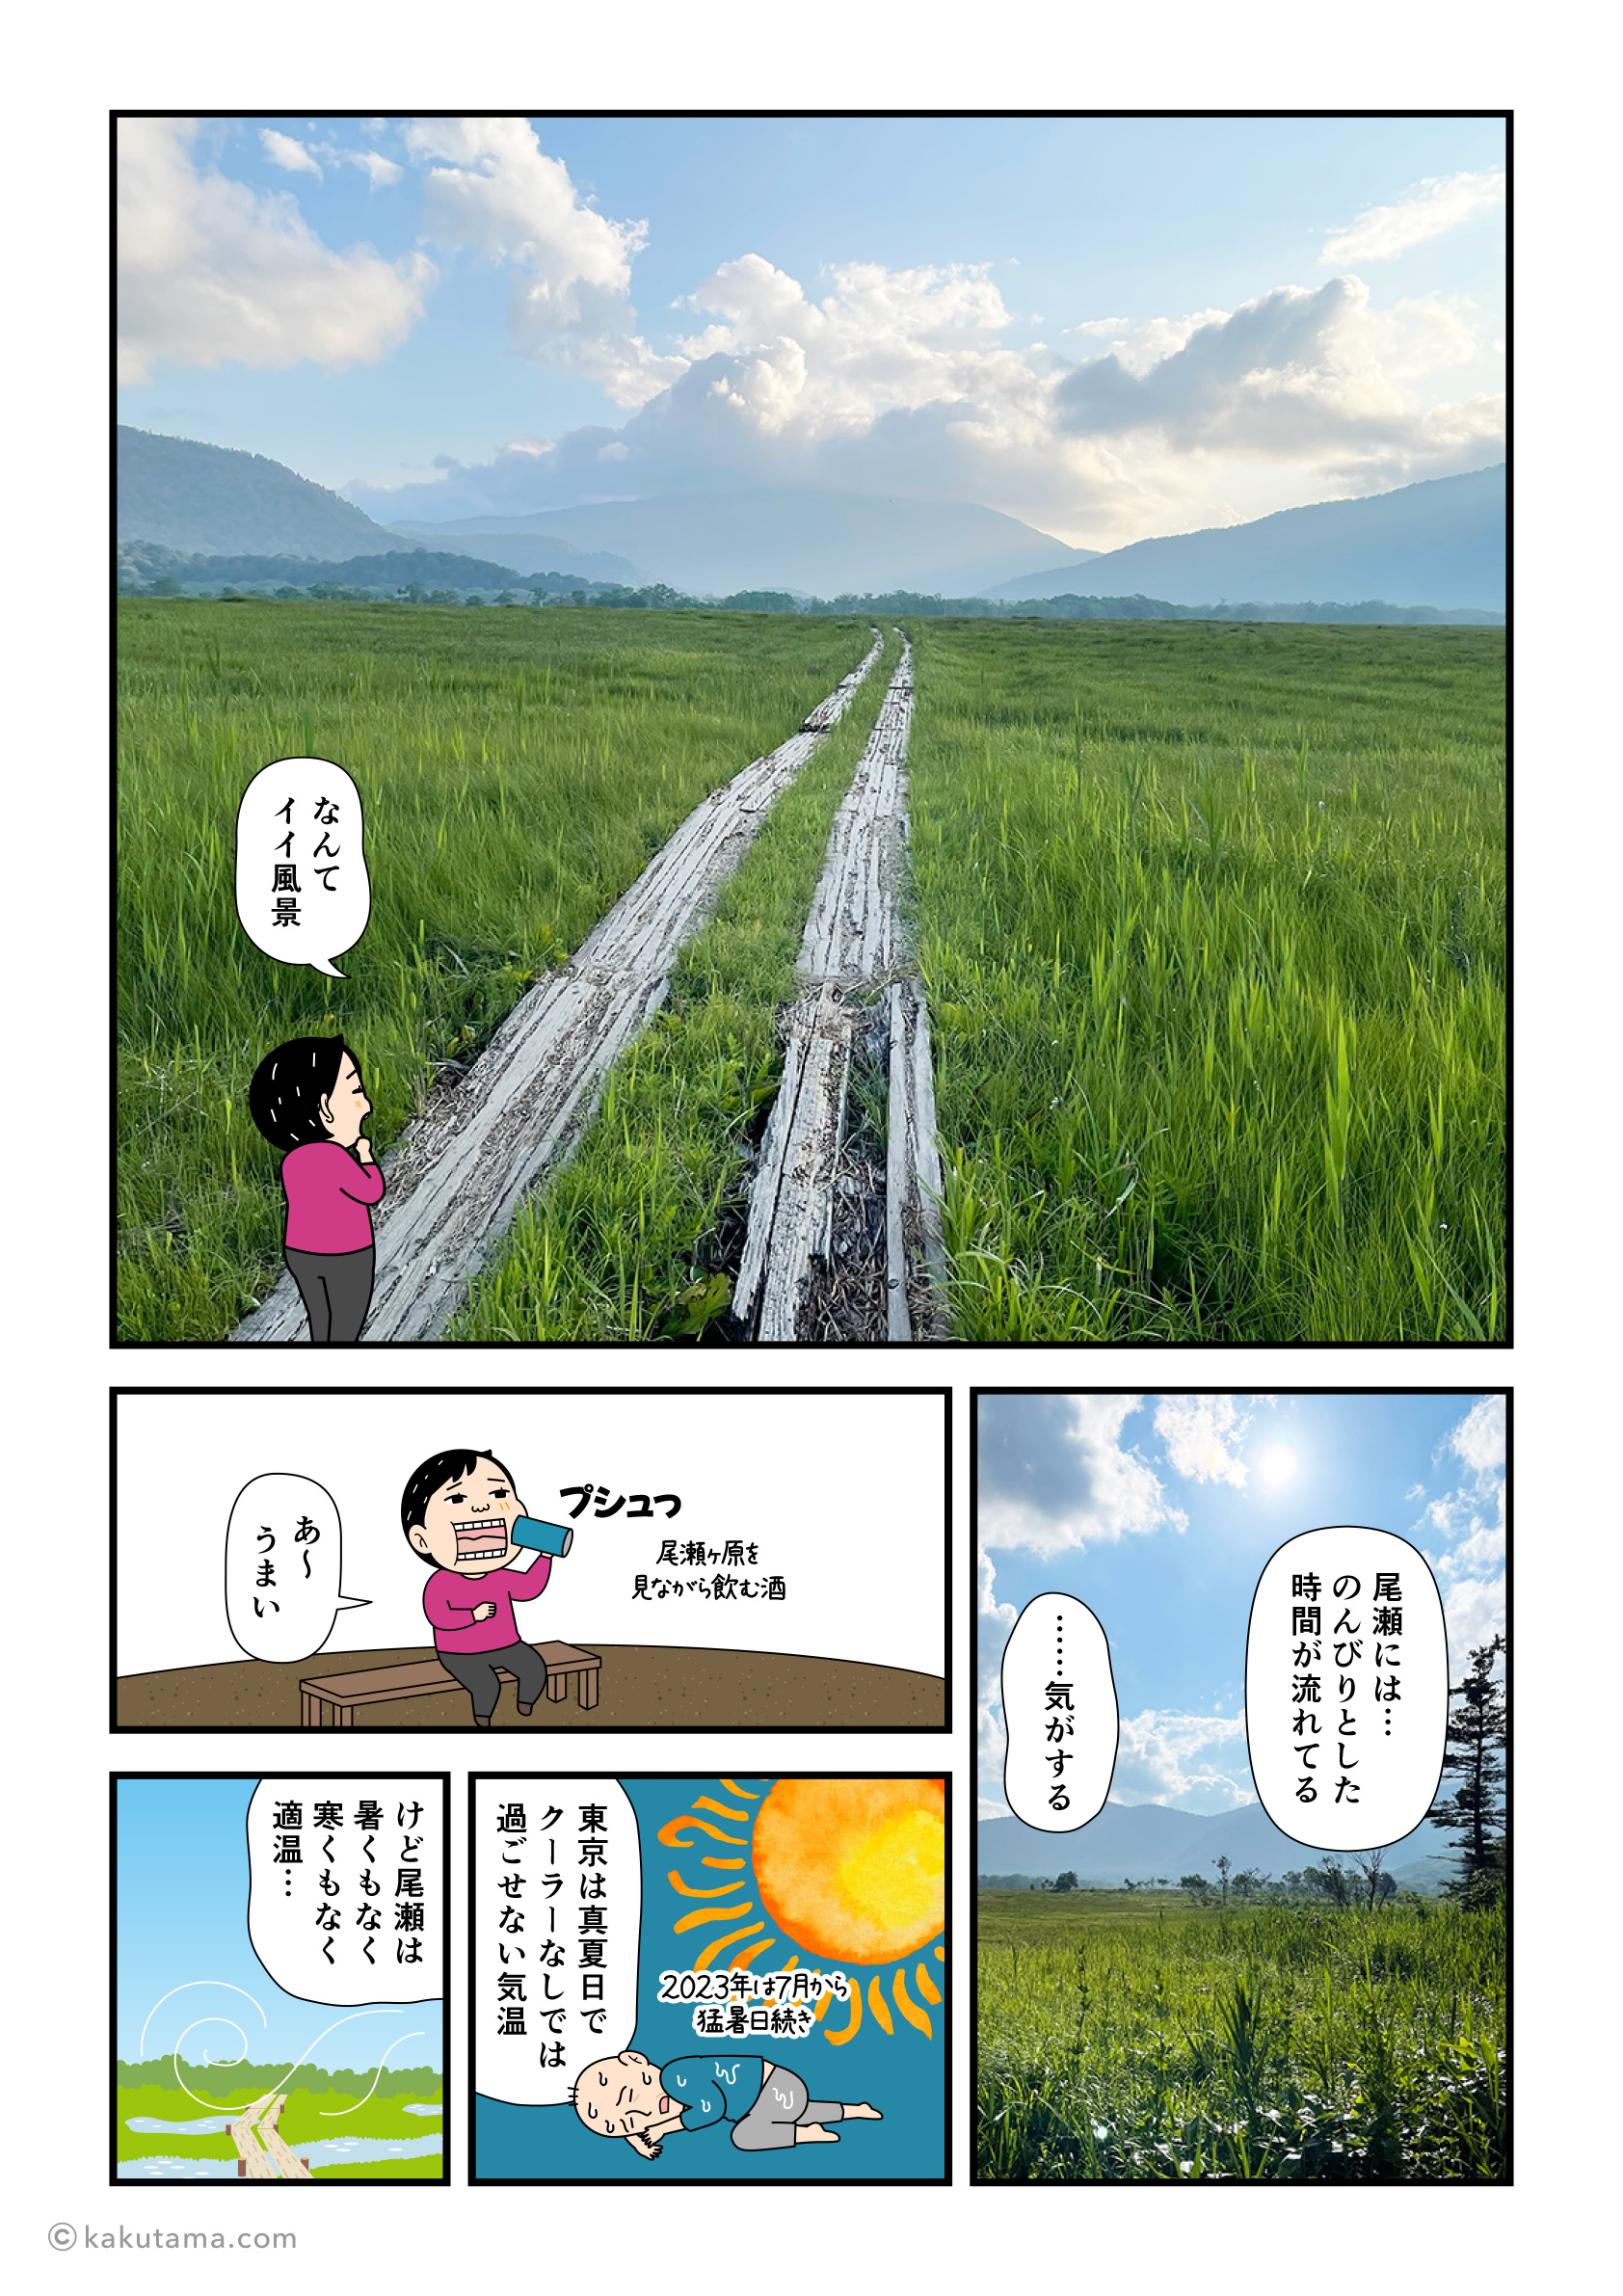 尾瀬ヶ原の風景を満喫する登山者の漫画